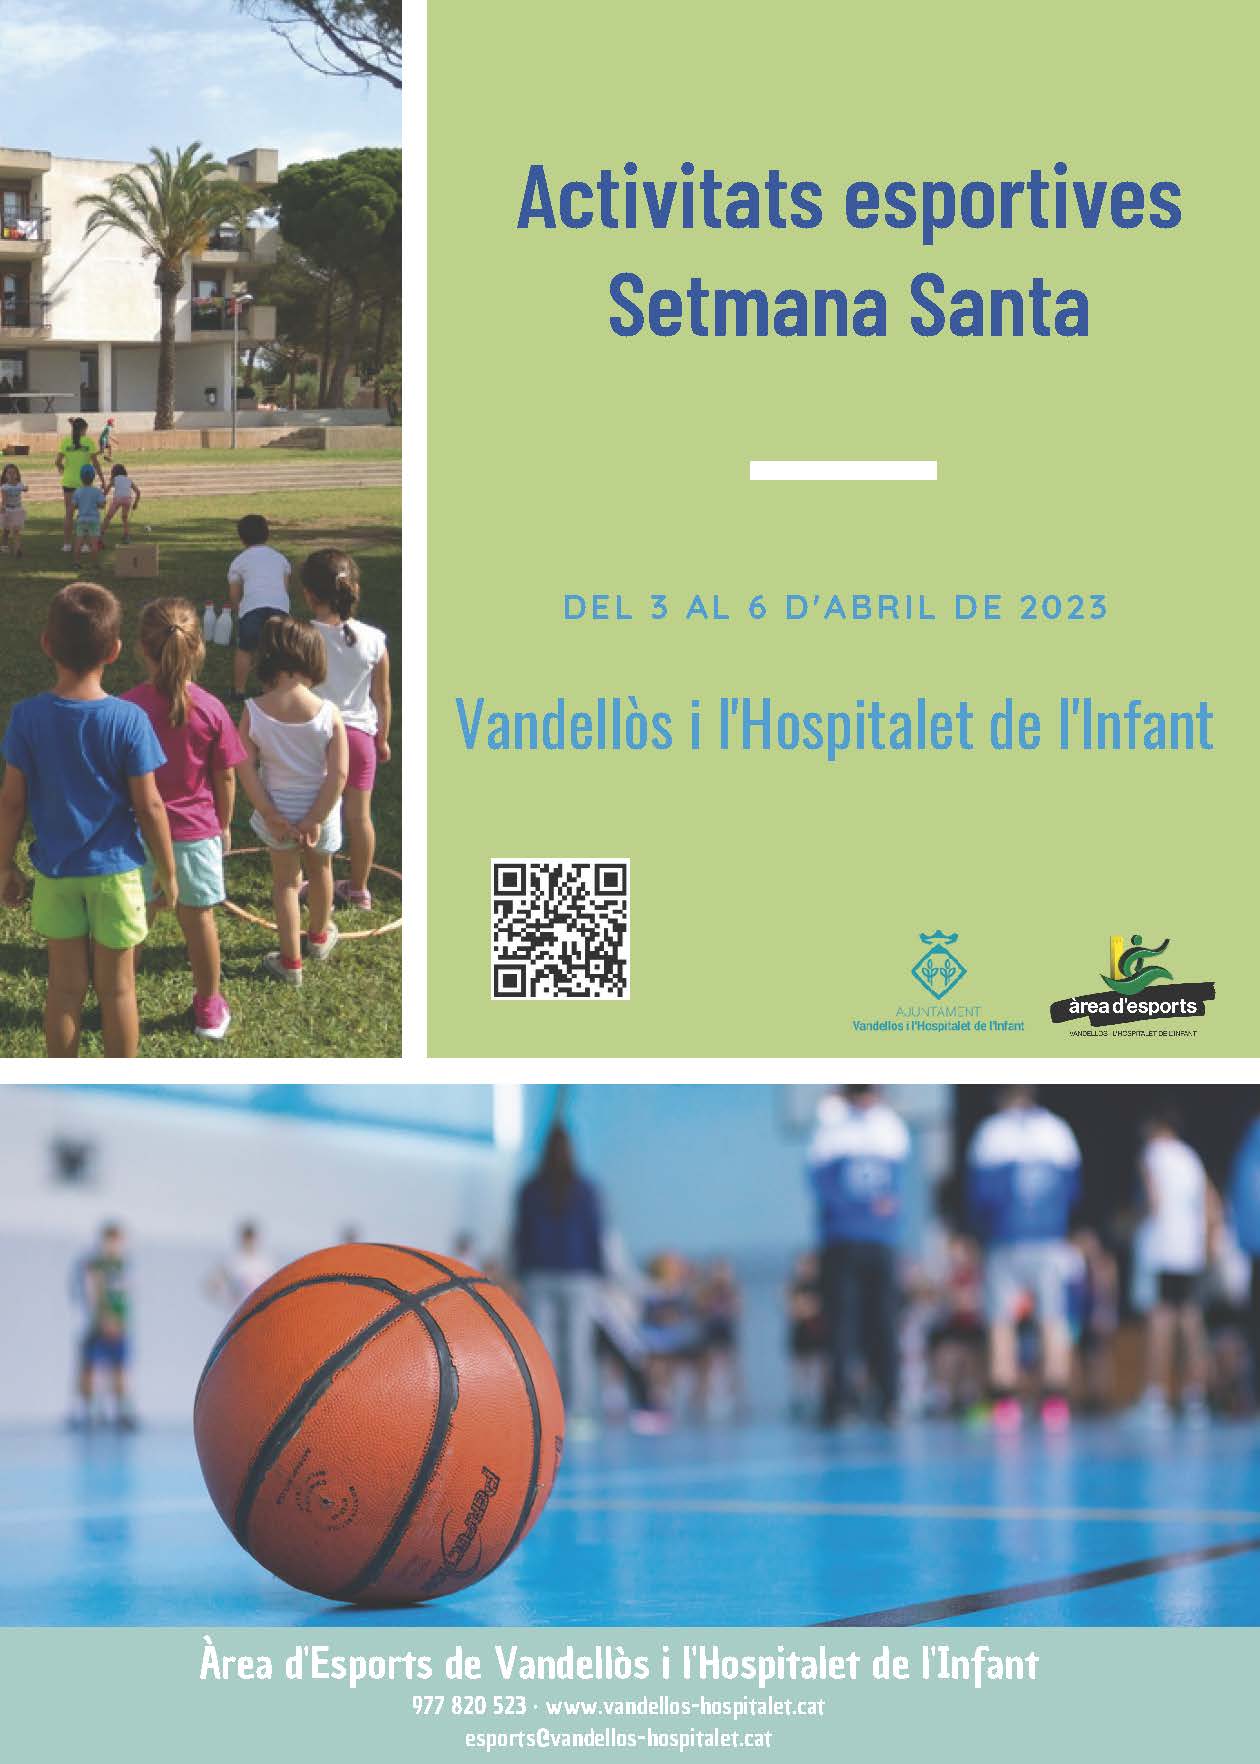 Oberta la preinscripció a les activitats esportives que ofereix l’Ajuntament de Vandellòs i l’Hospitalet de l’Infant per Setmana Santa